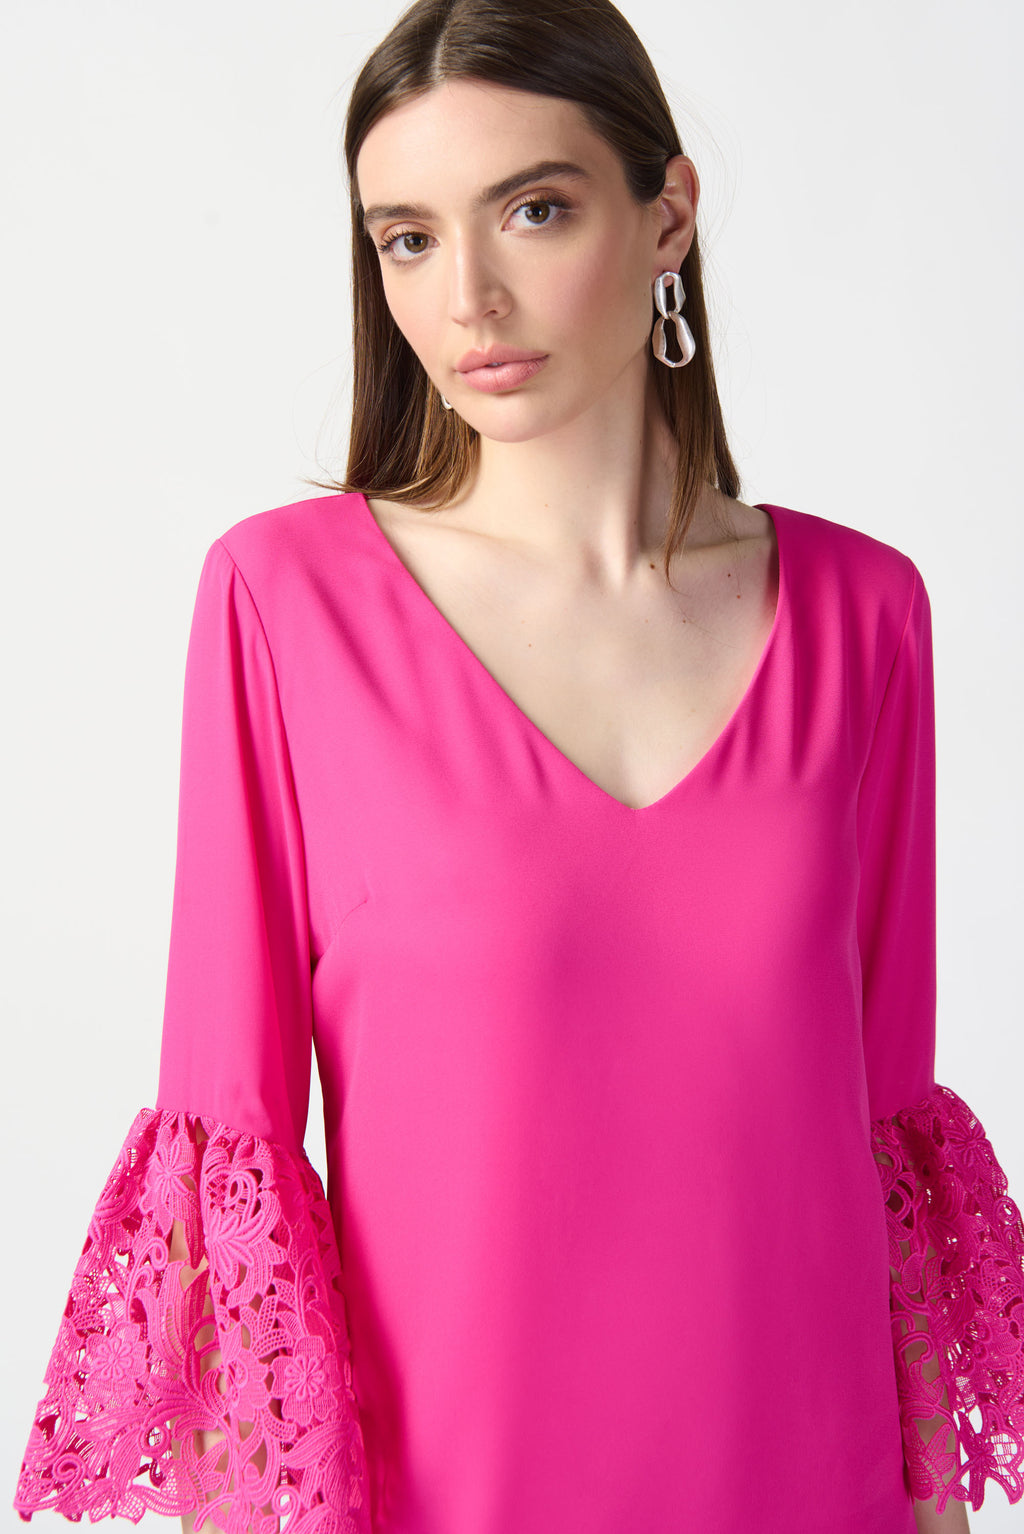 Joseph Ribkoff Ultra Pink Trapeze Dress Style 241252